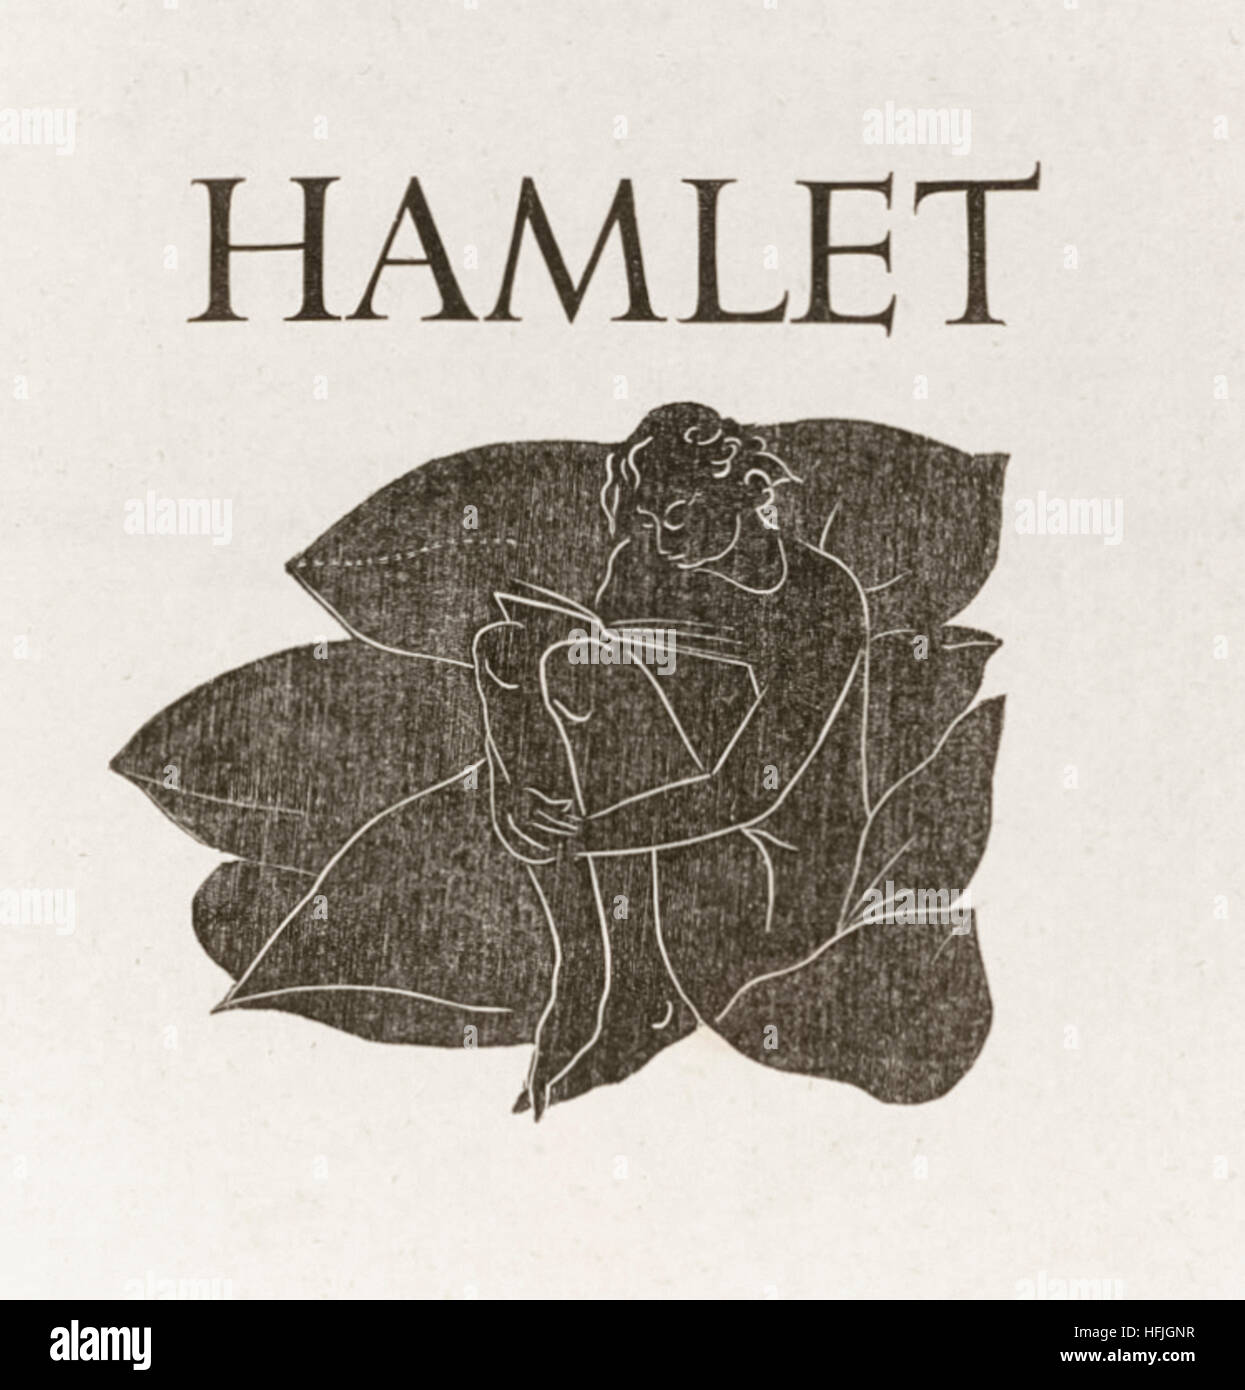 Titelseite von "Hamlet" von William Shakespeare (1564-1616) mit einem Holzschnitt von Eric Gill (1882-1940). Siehe Beschreibung für mehr Informationen. Stockfoto